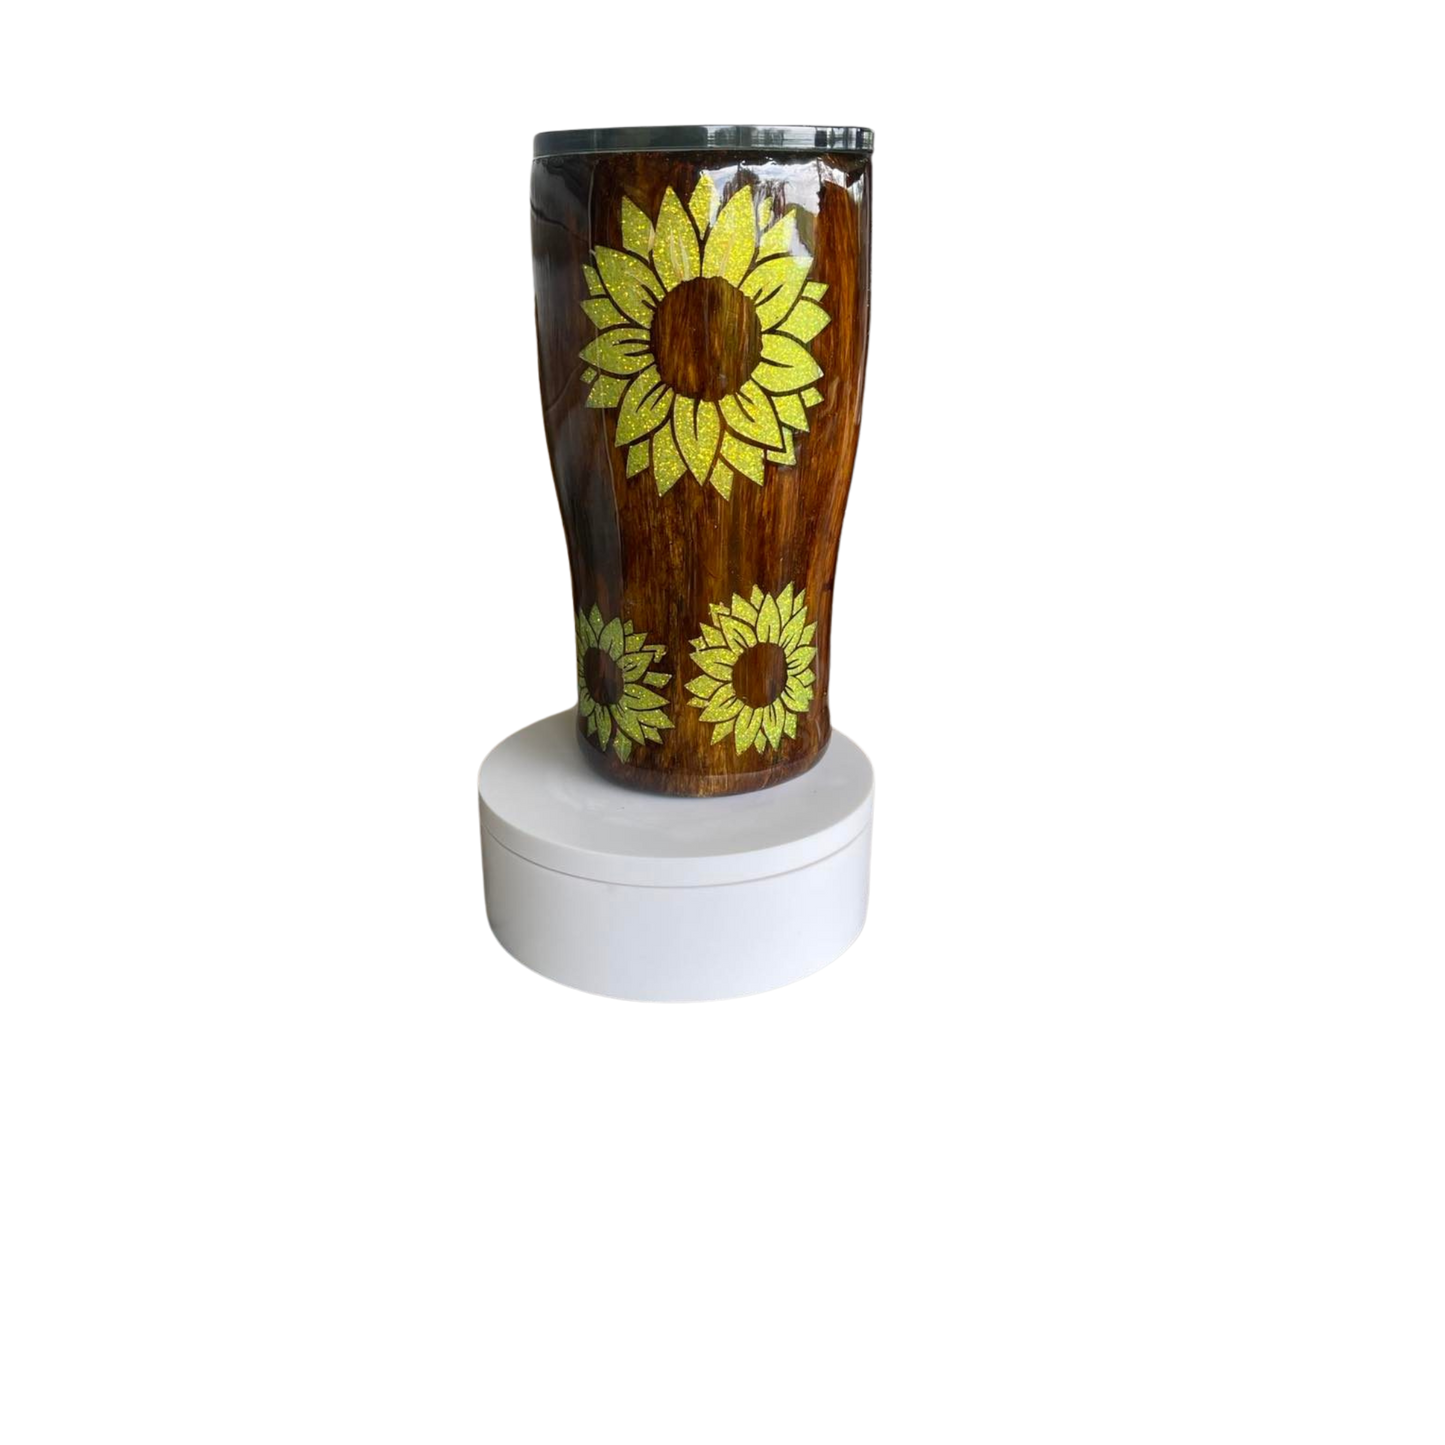 Woodgrain and Sunflower Tumbler